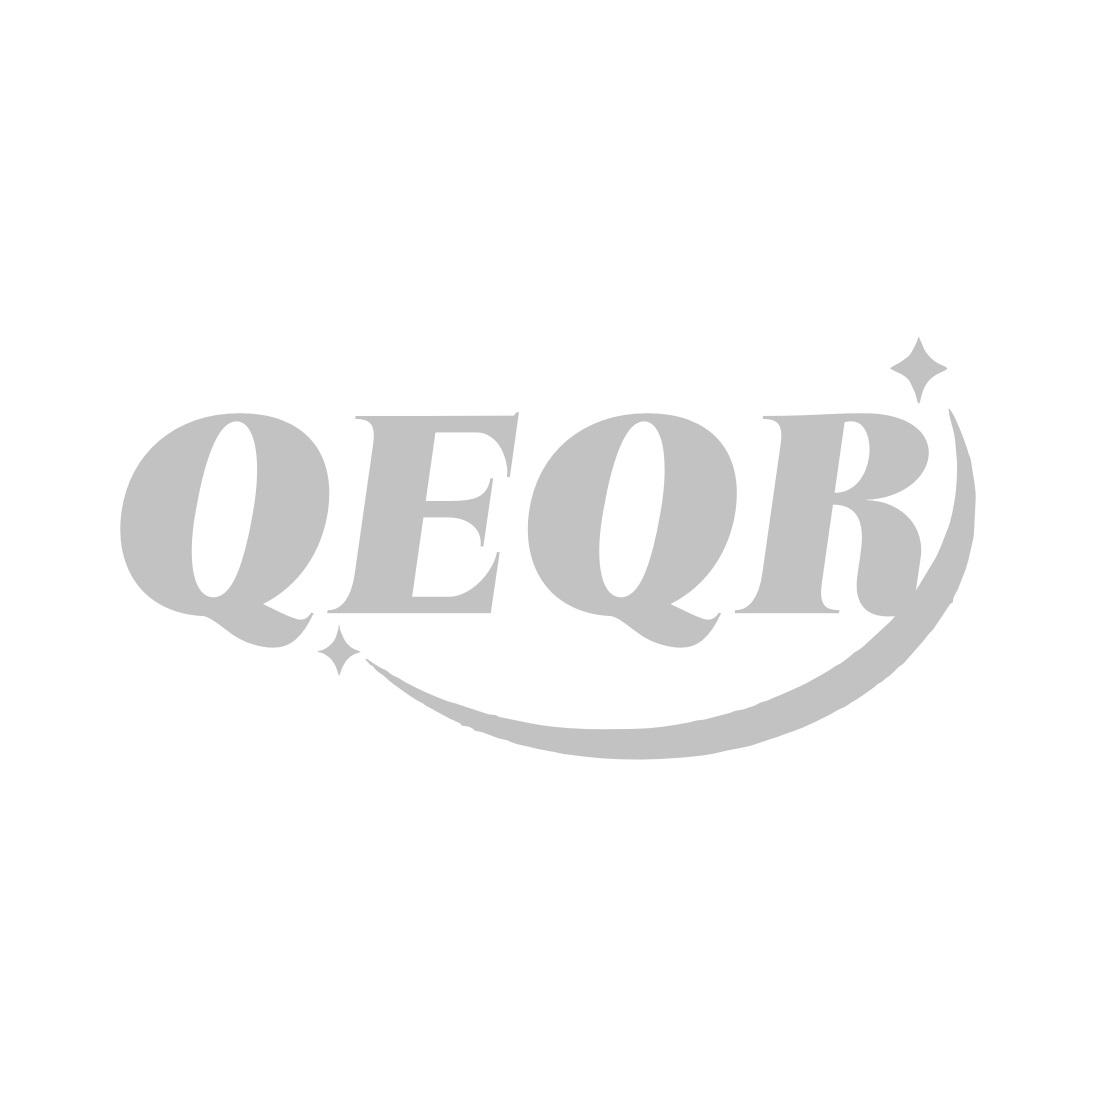 转让商标-QEQR